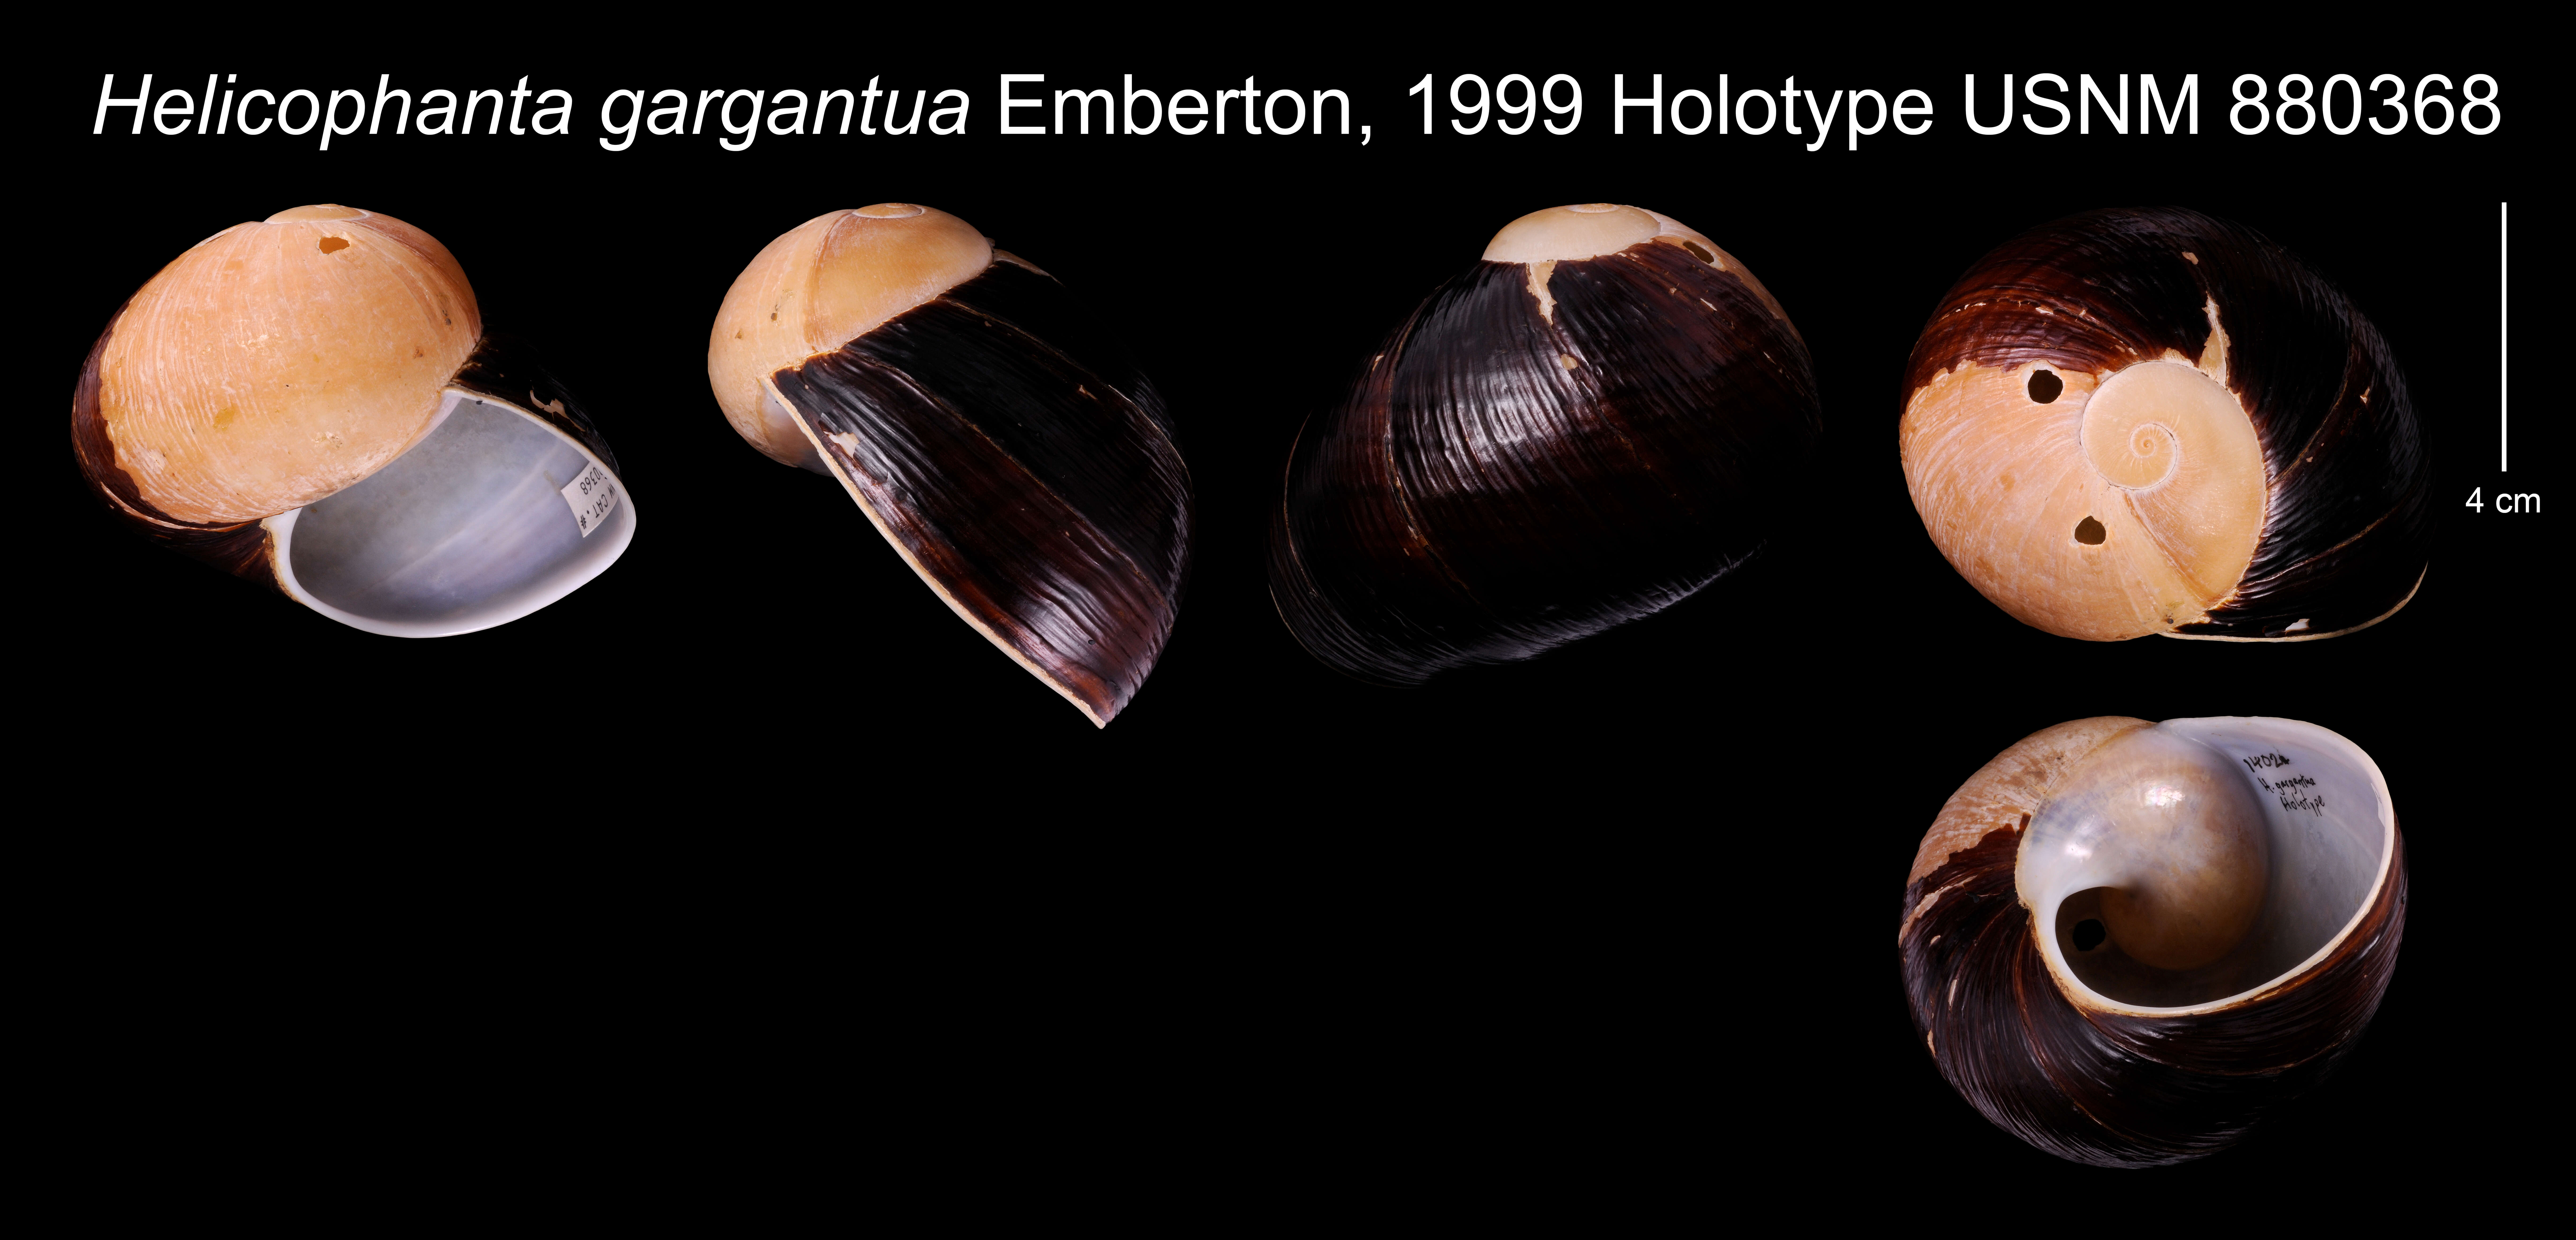 Image of Helicophanta gargantua Emberton 1999